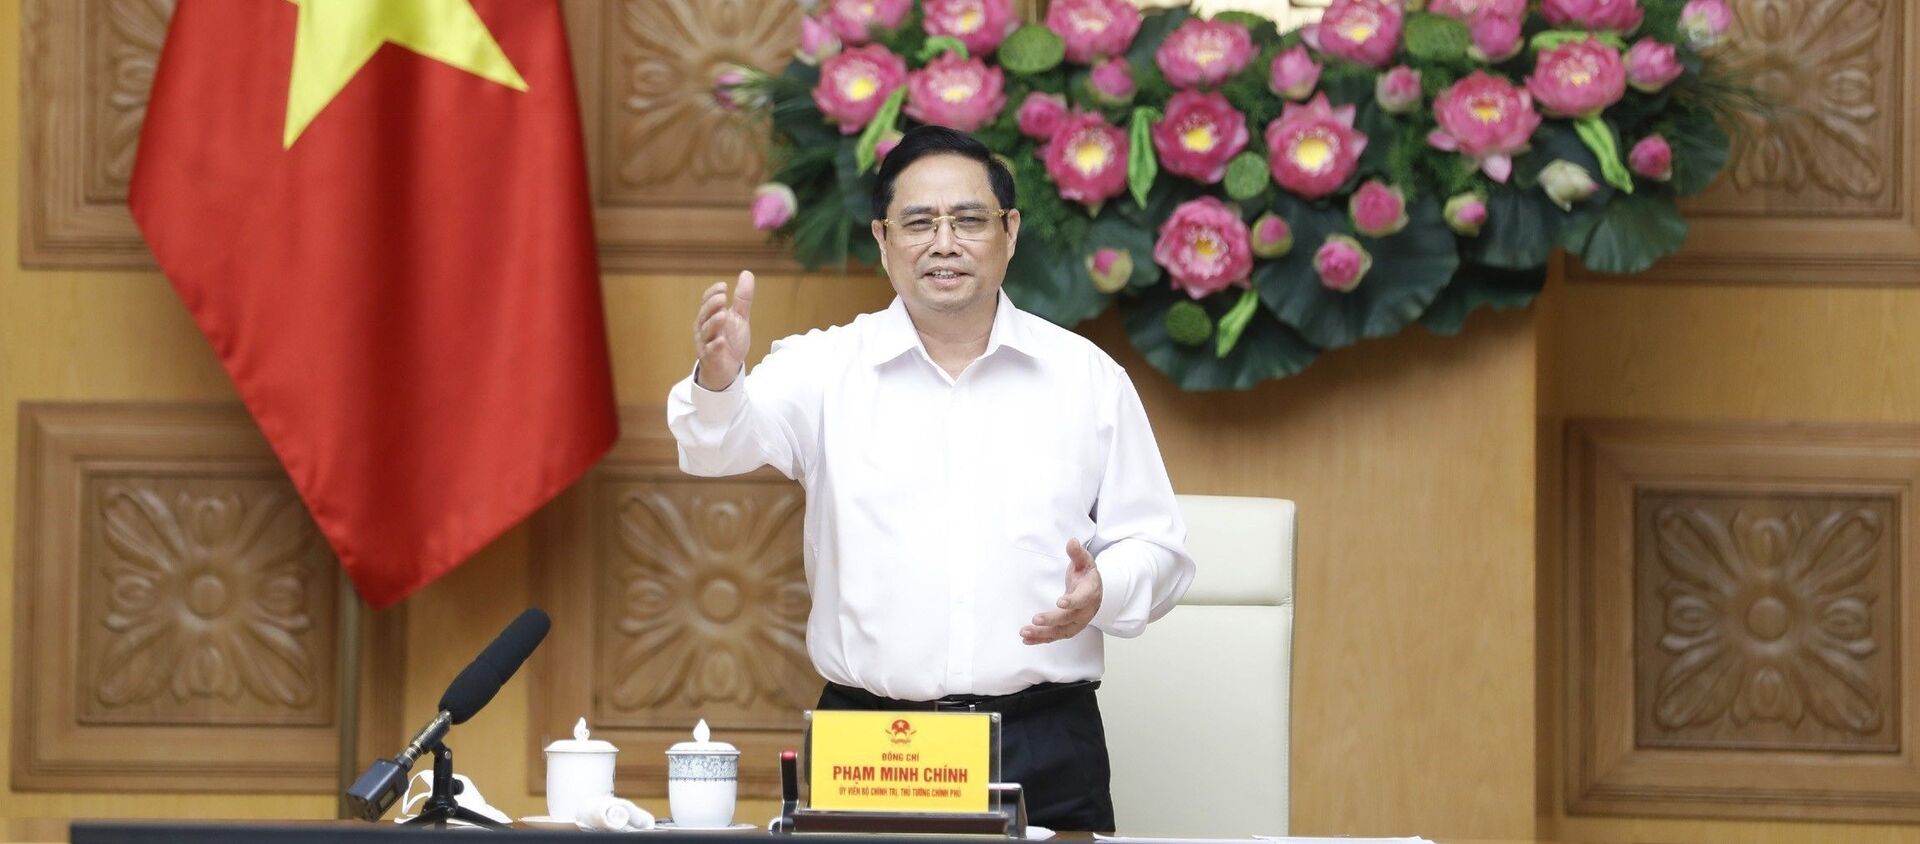 Thủ tướng Phạm Minh Chính làm việc với các đơn vị nghiên cứu, sản xuất vaccine phòng COVID-19 trong nước - Sputnik Việt Nam, 1920, 07.06.2021